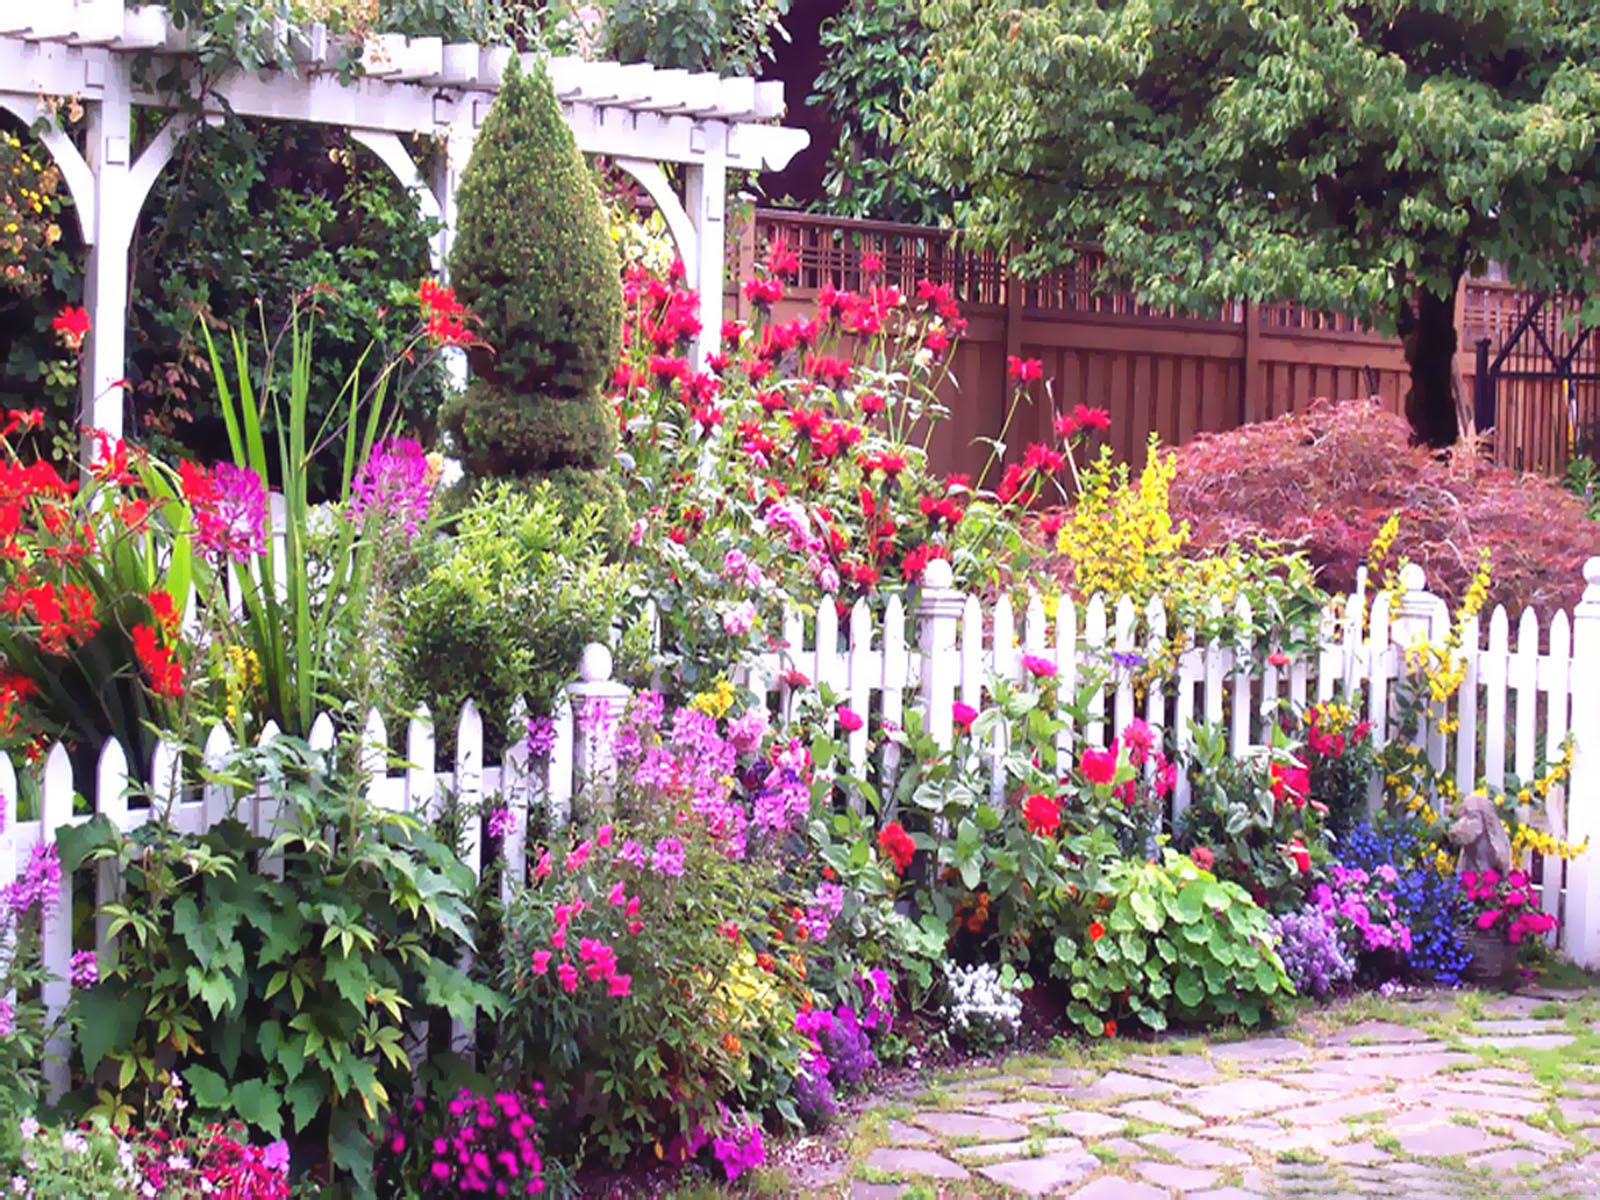 Wonderful Summer Container Garden Flower Ideas Page